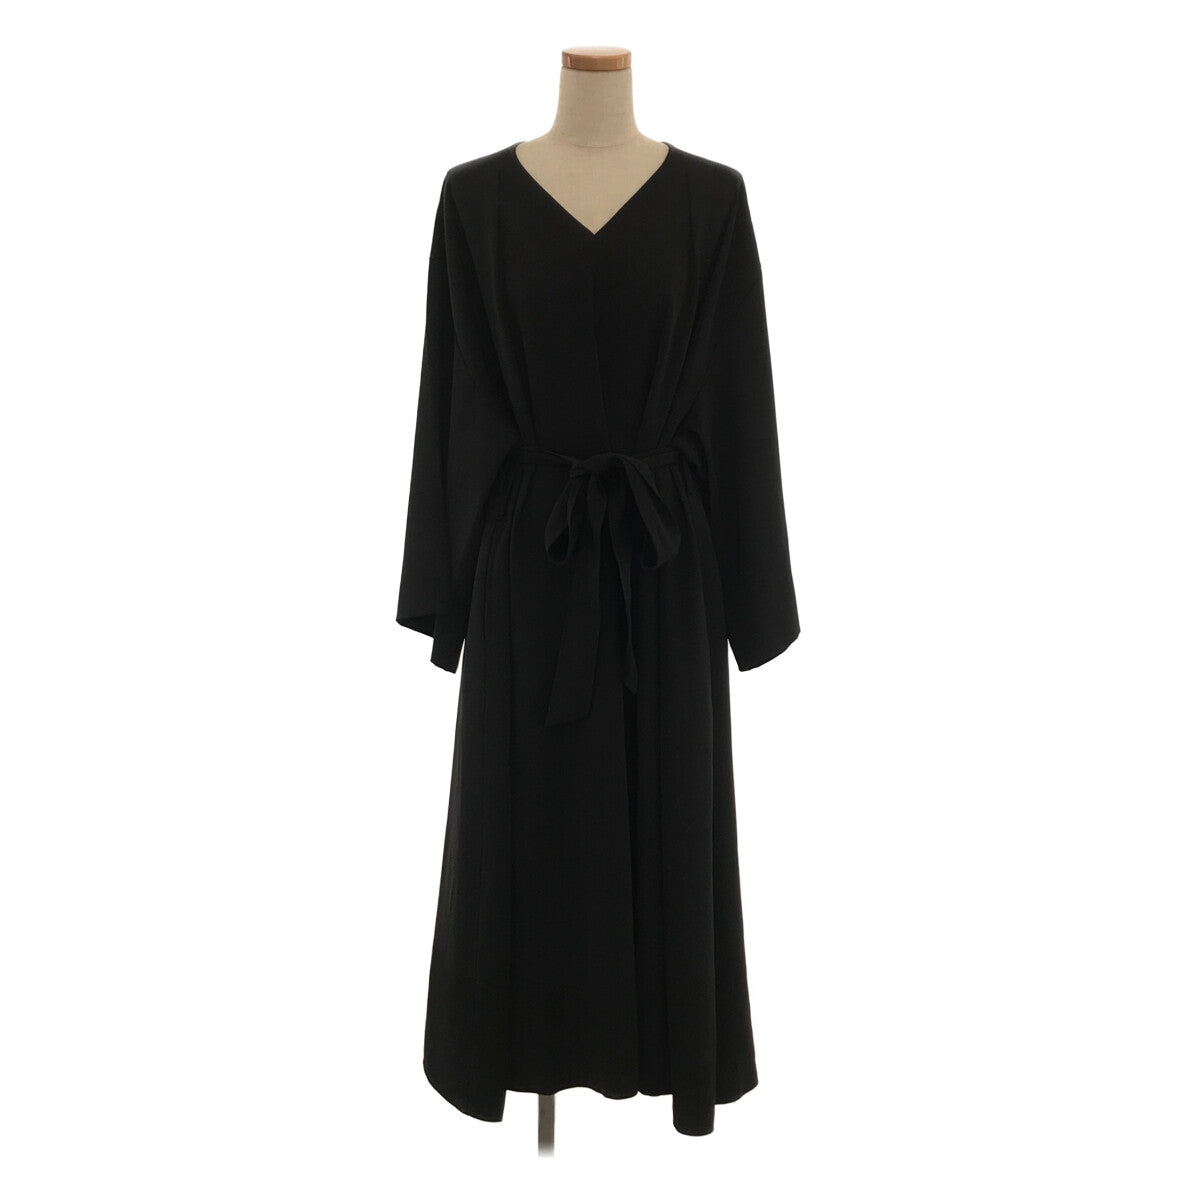 【美品】 foufou / フーフー | THE DRESS #07 drape v neck dress ワンピース | 0 | ブラック |  レディース